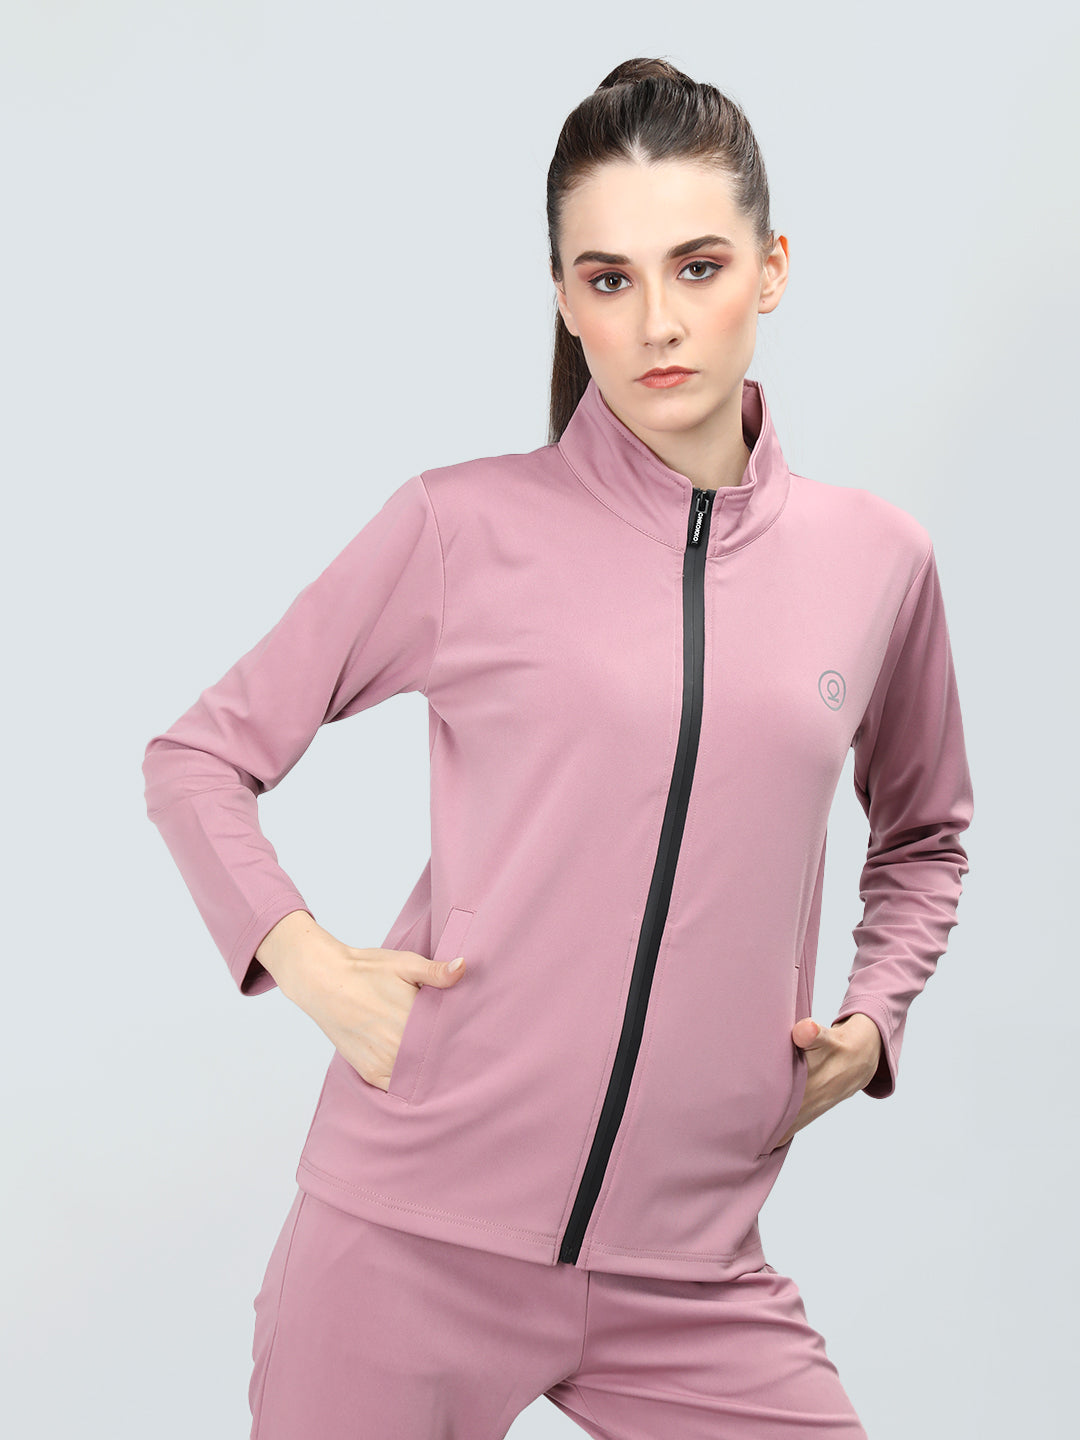 Women's Pstl Pink Sports Zipper Stylish JAcket | CHKOKKO